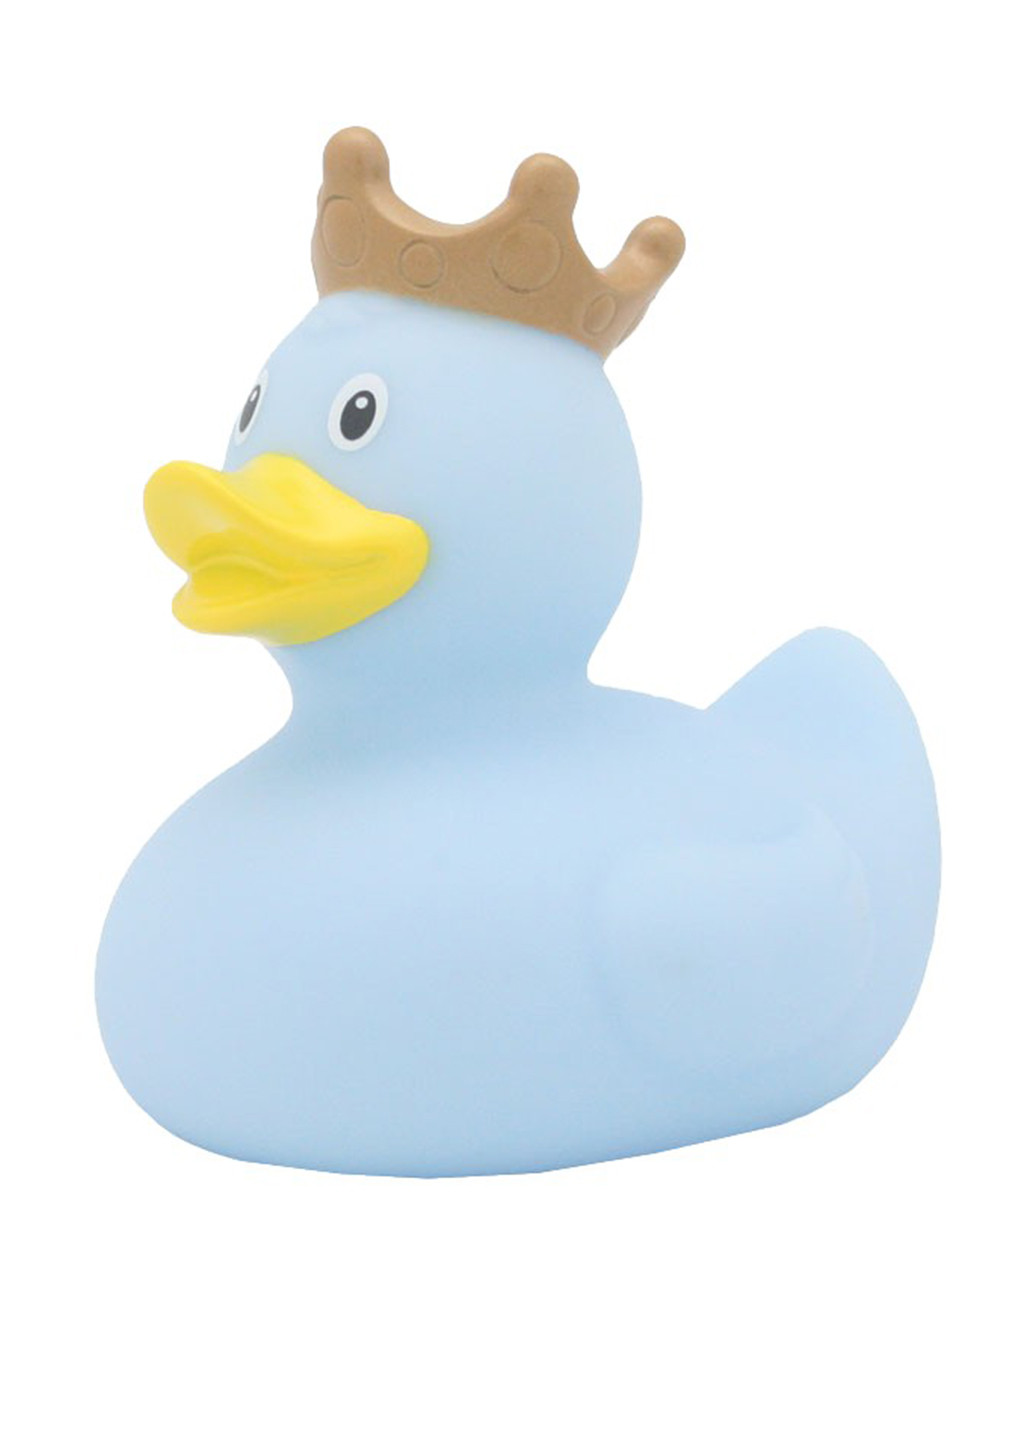 Игрушка для купания Утка, 8,5x8,5x7,5 см Funny Ducks (250618840)